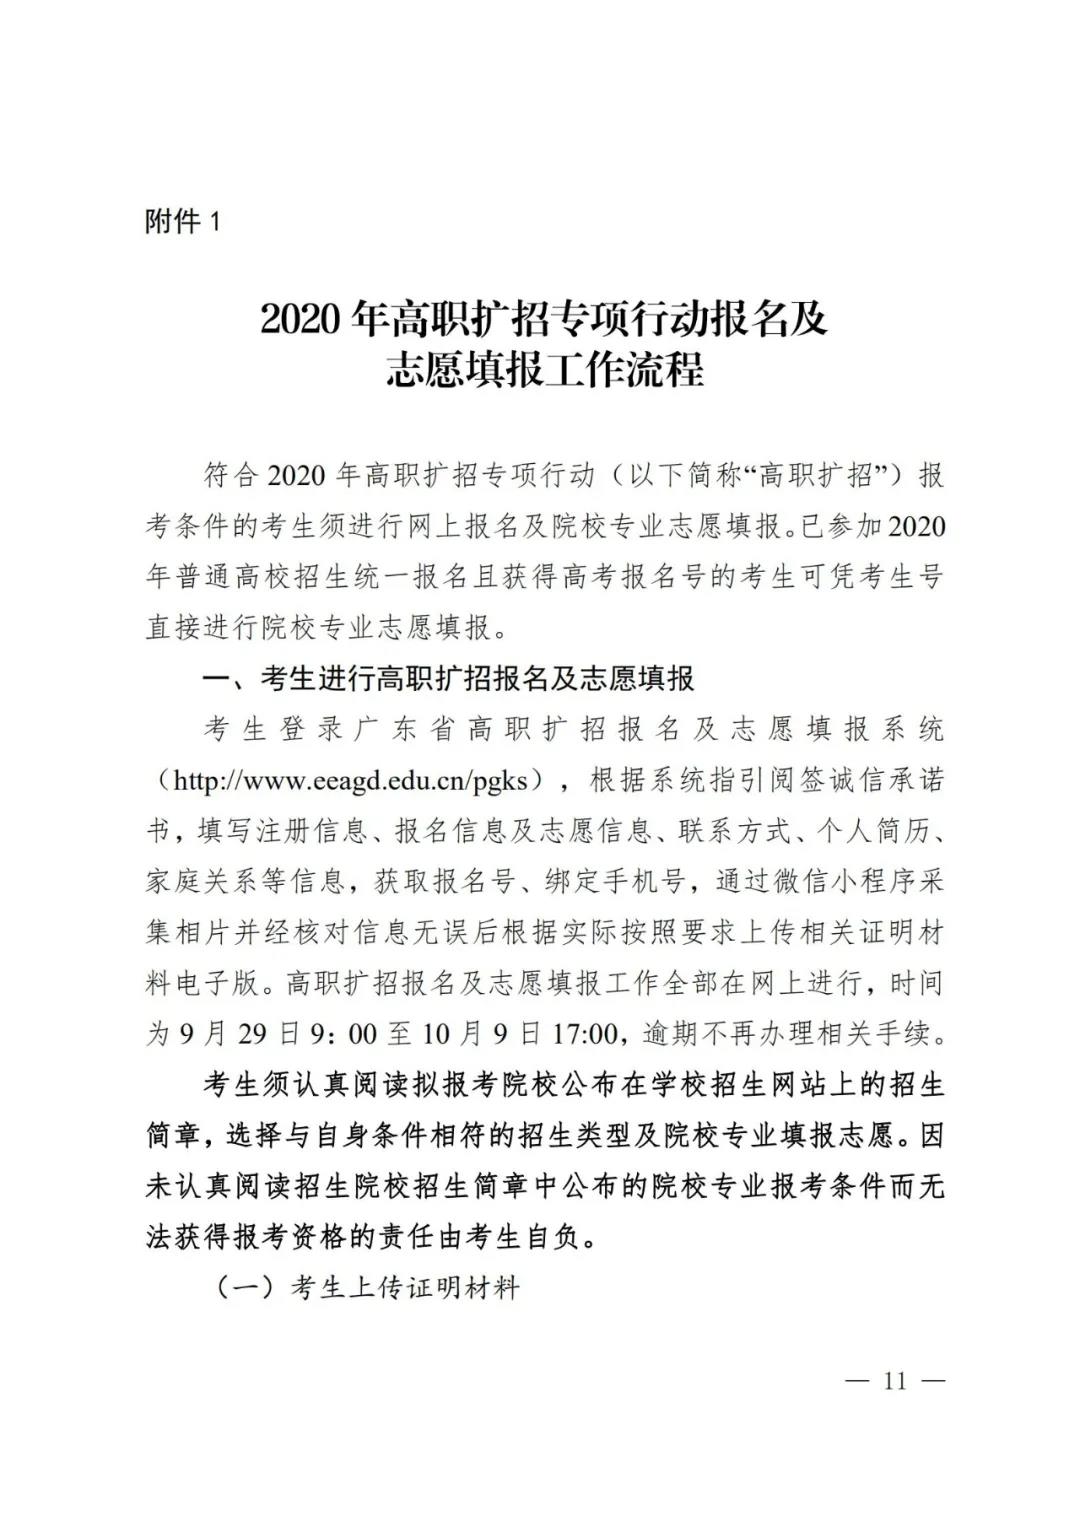 广东省教育厅关于实施2020年高职扩招专项行动有关工作的通知